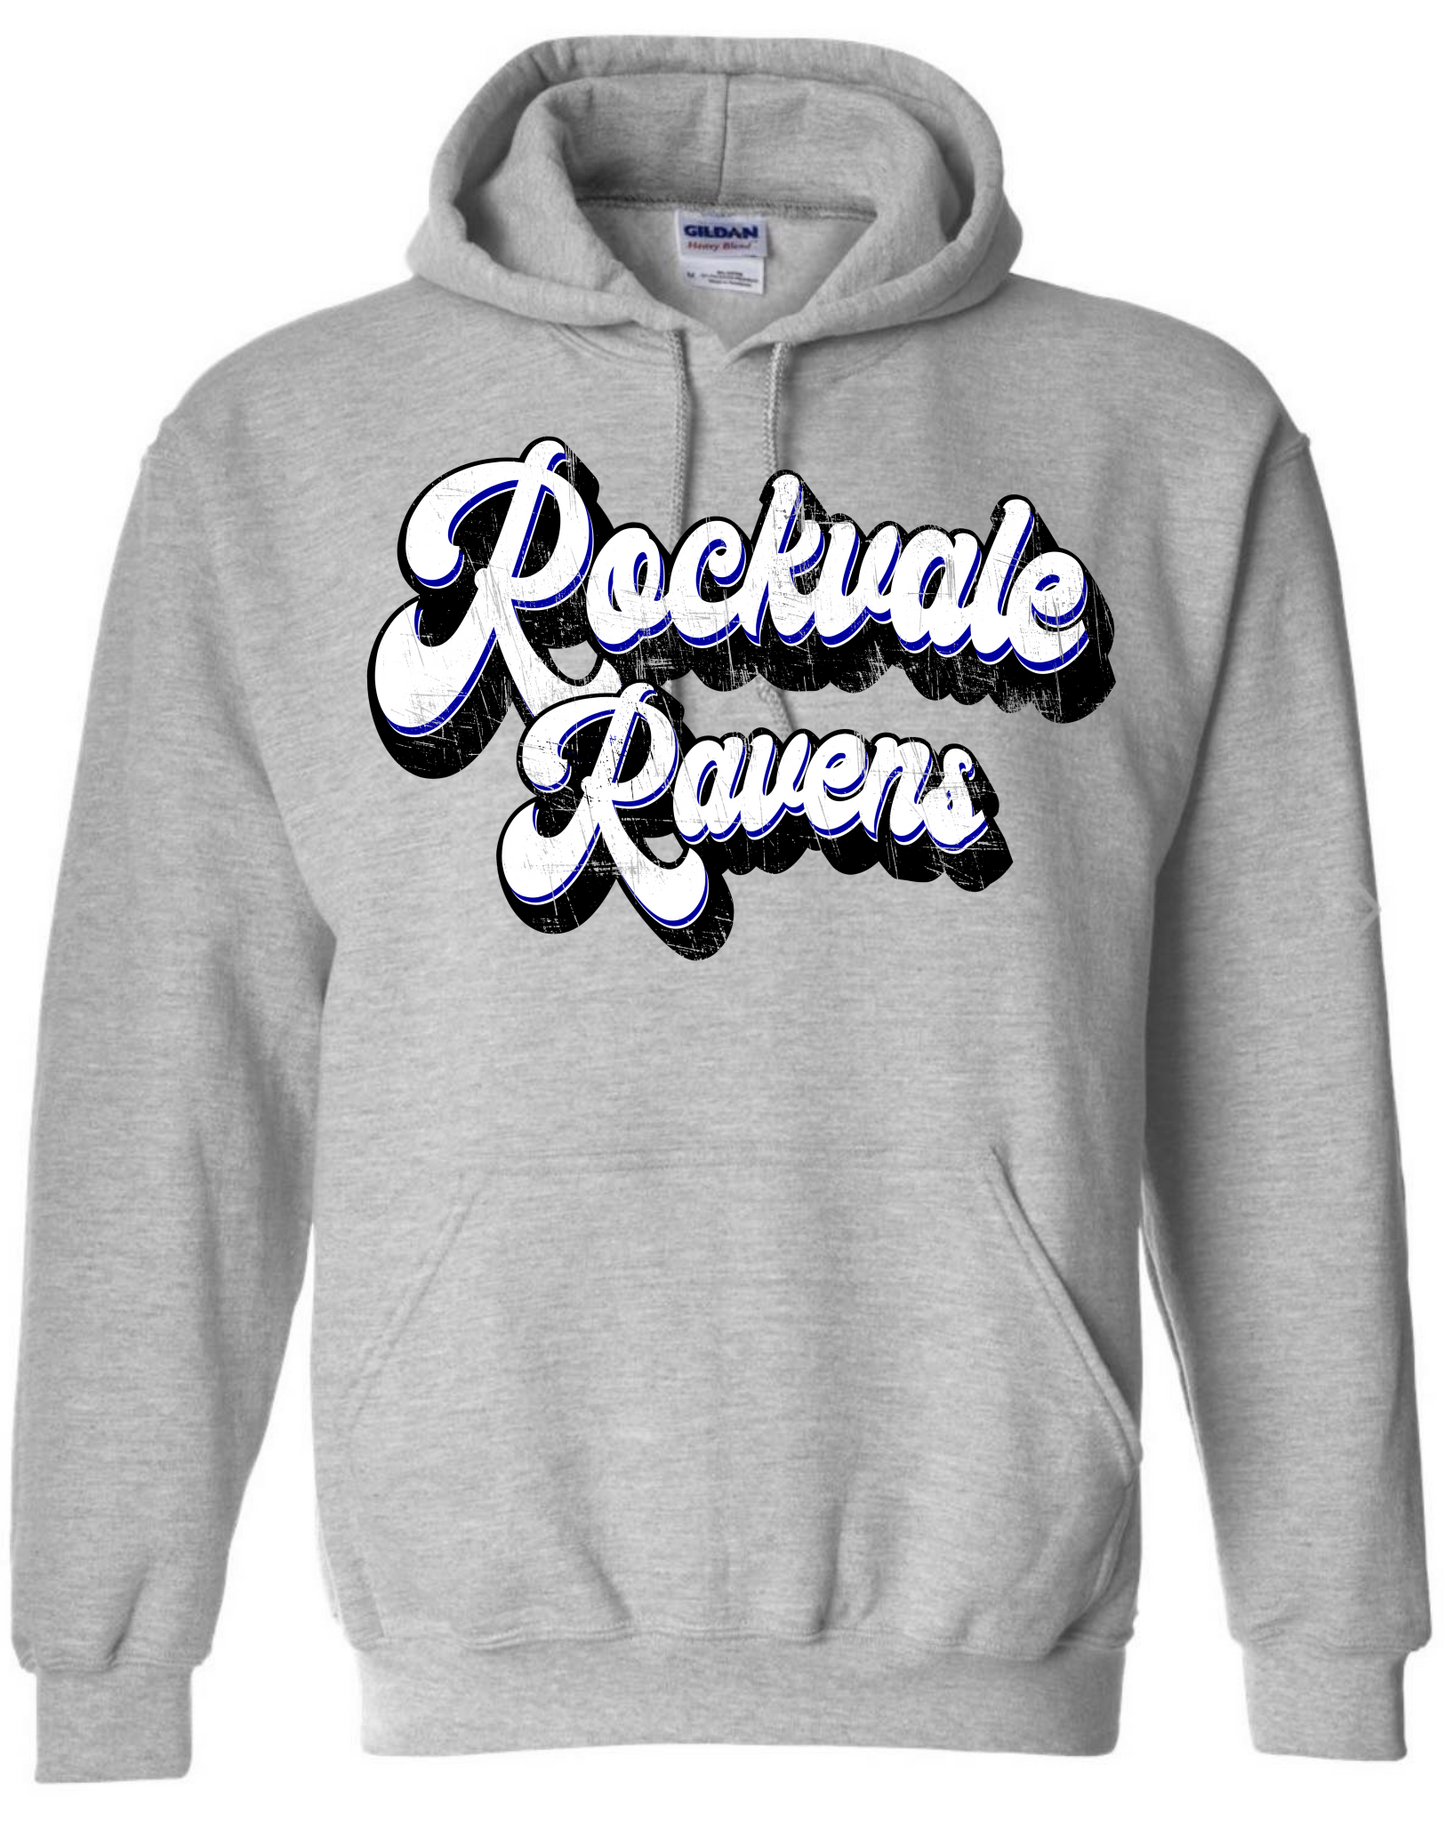 Distressed Rockvale Ravens Hoodie